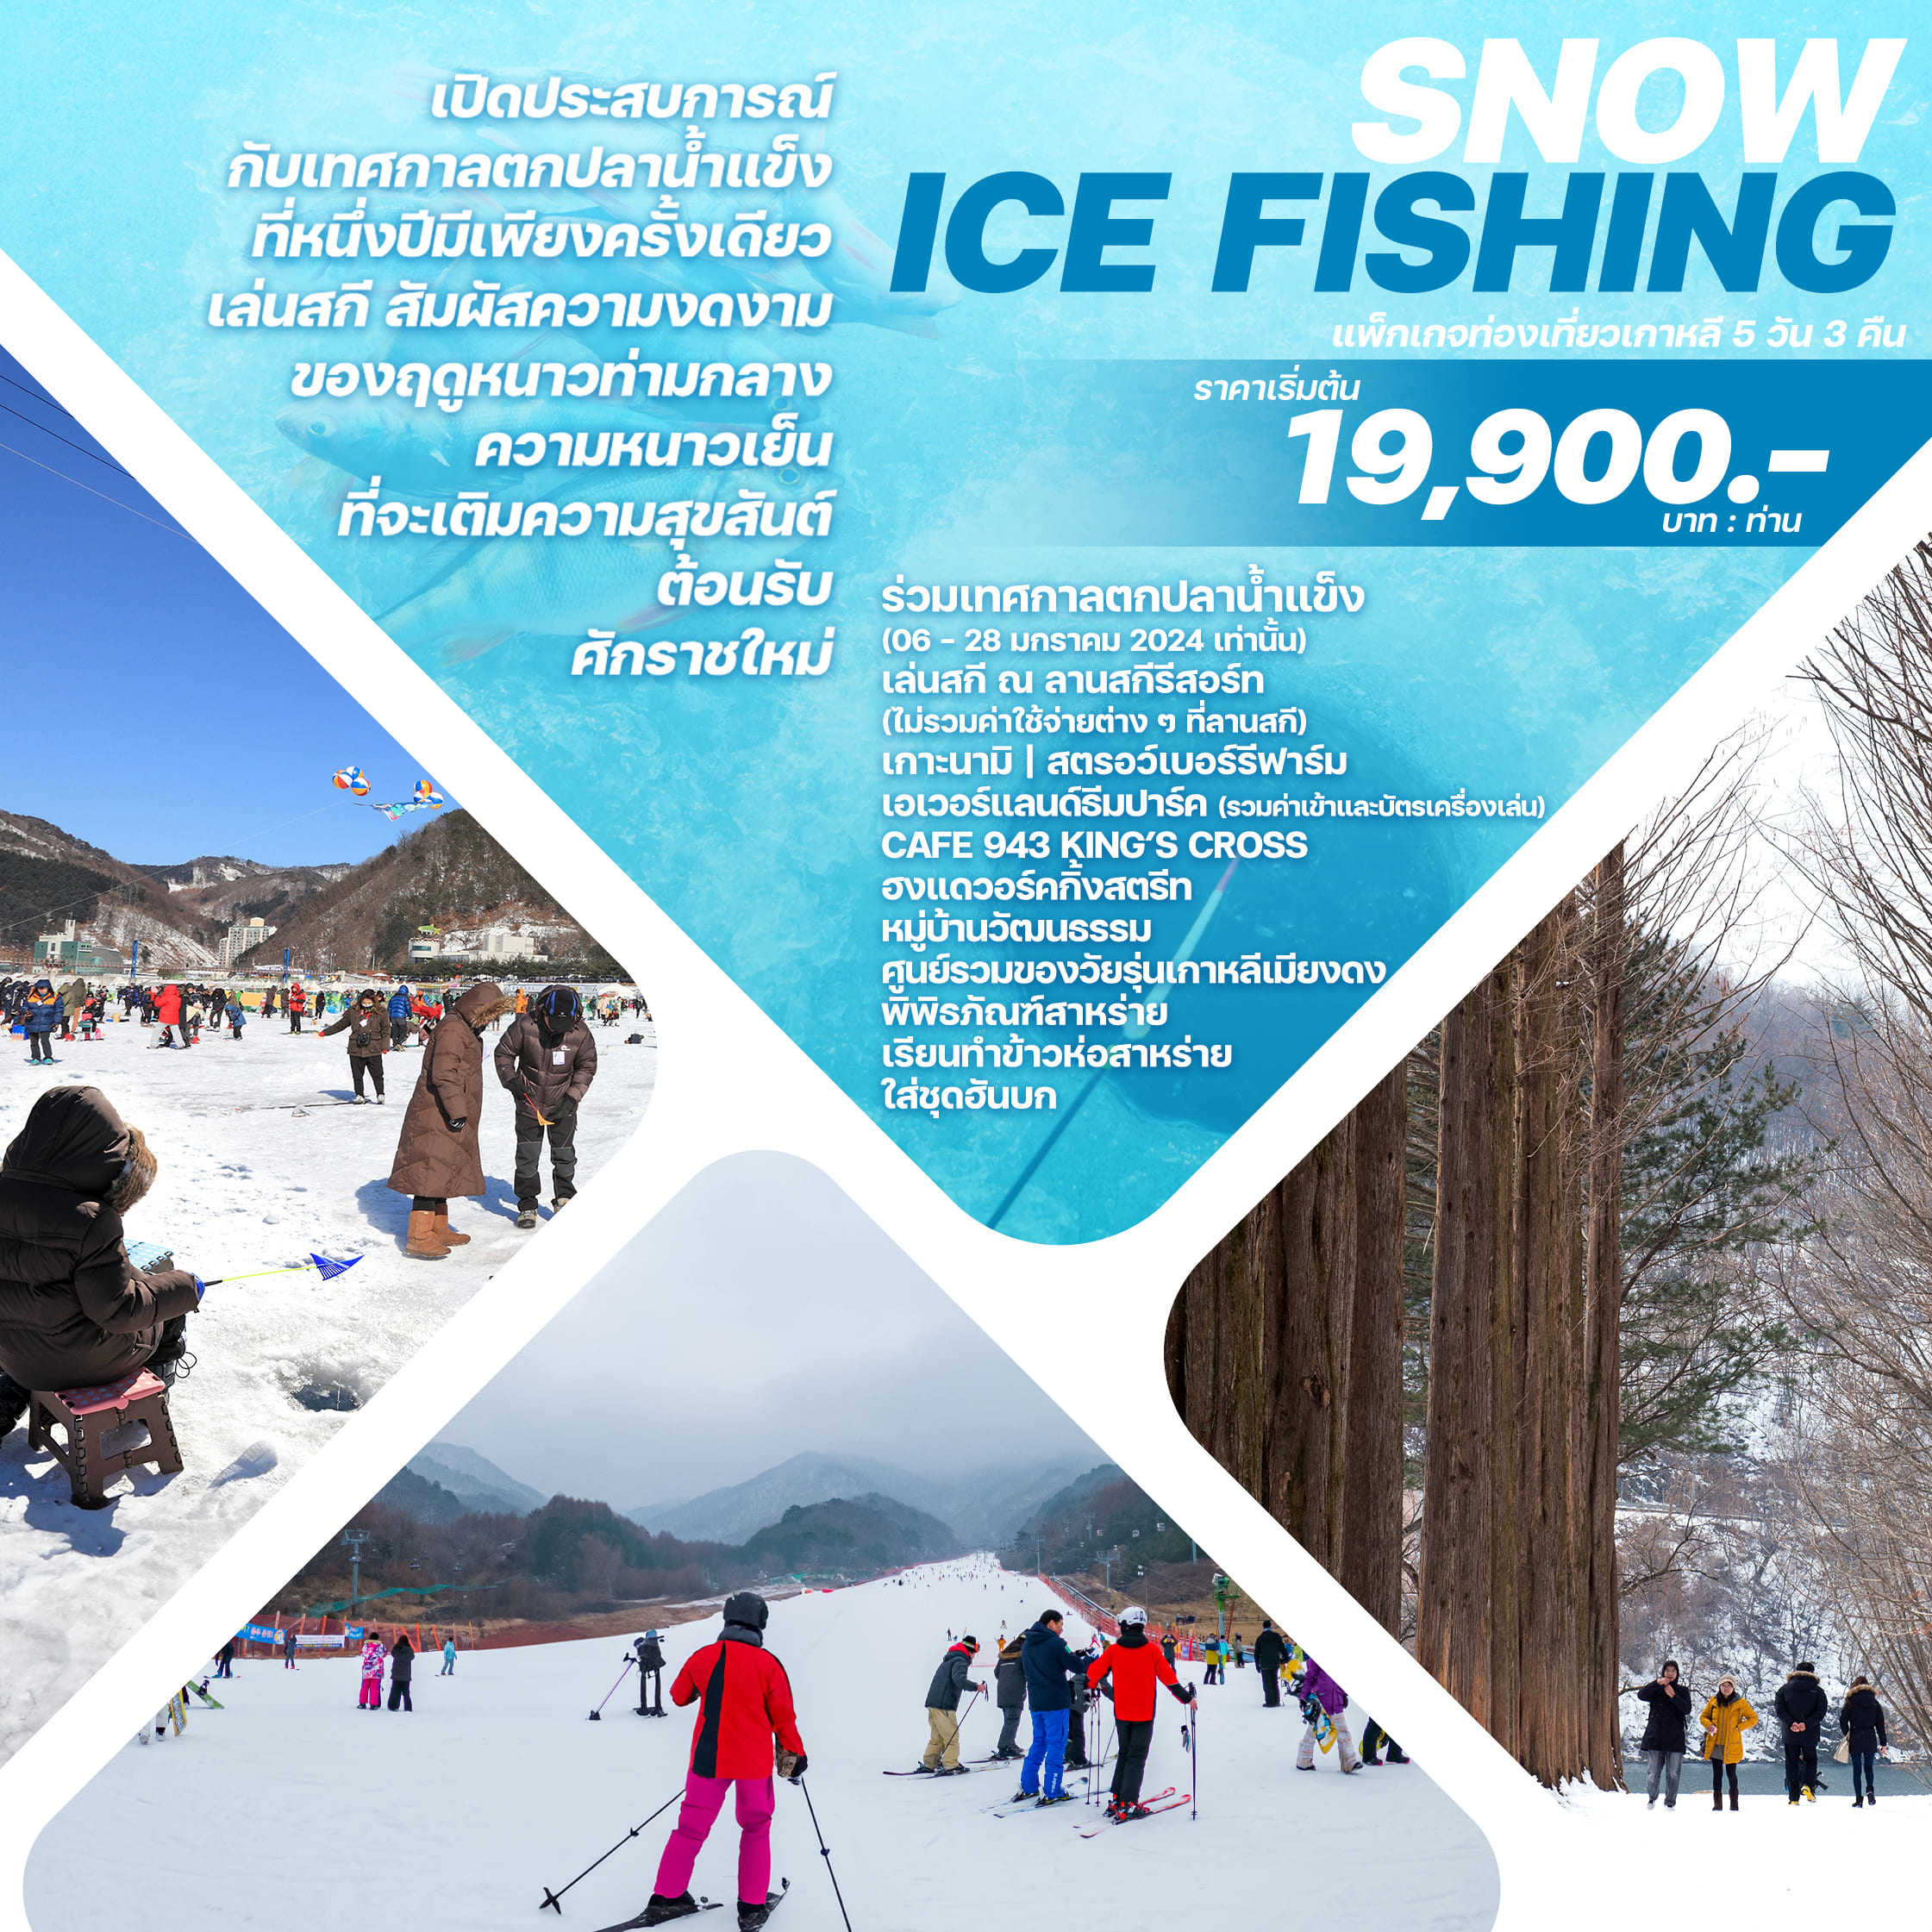 ทัวร์เกาหลี SNOW ICE FISHING 5วัน 3คืน